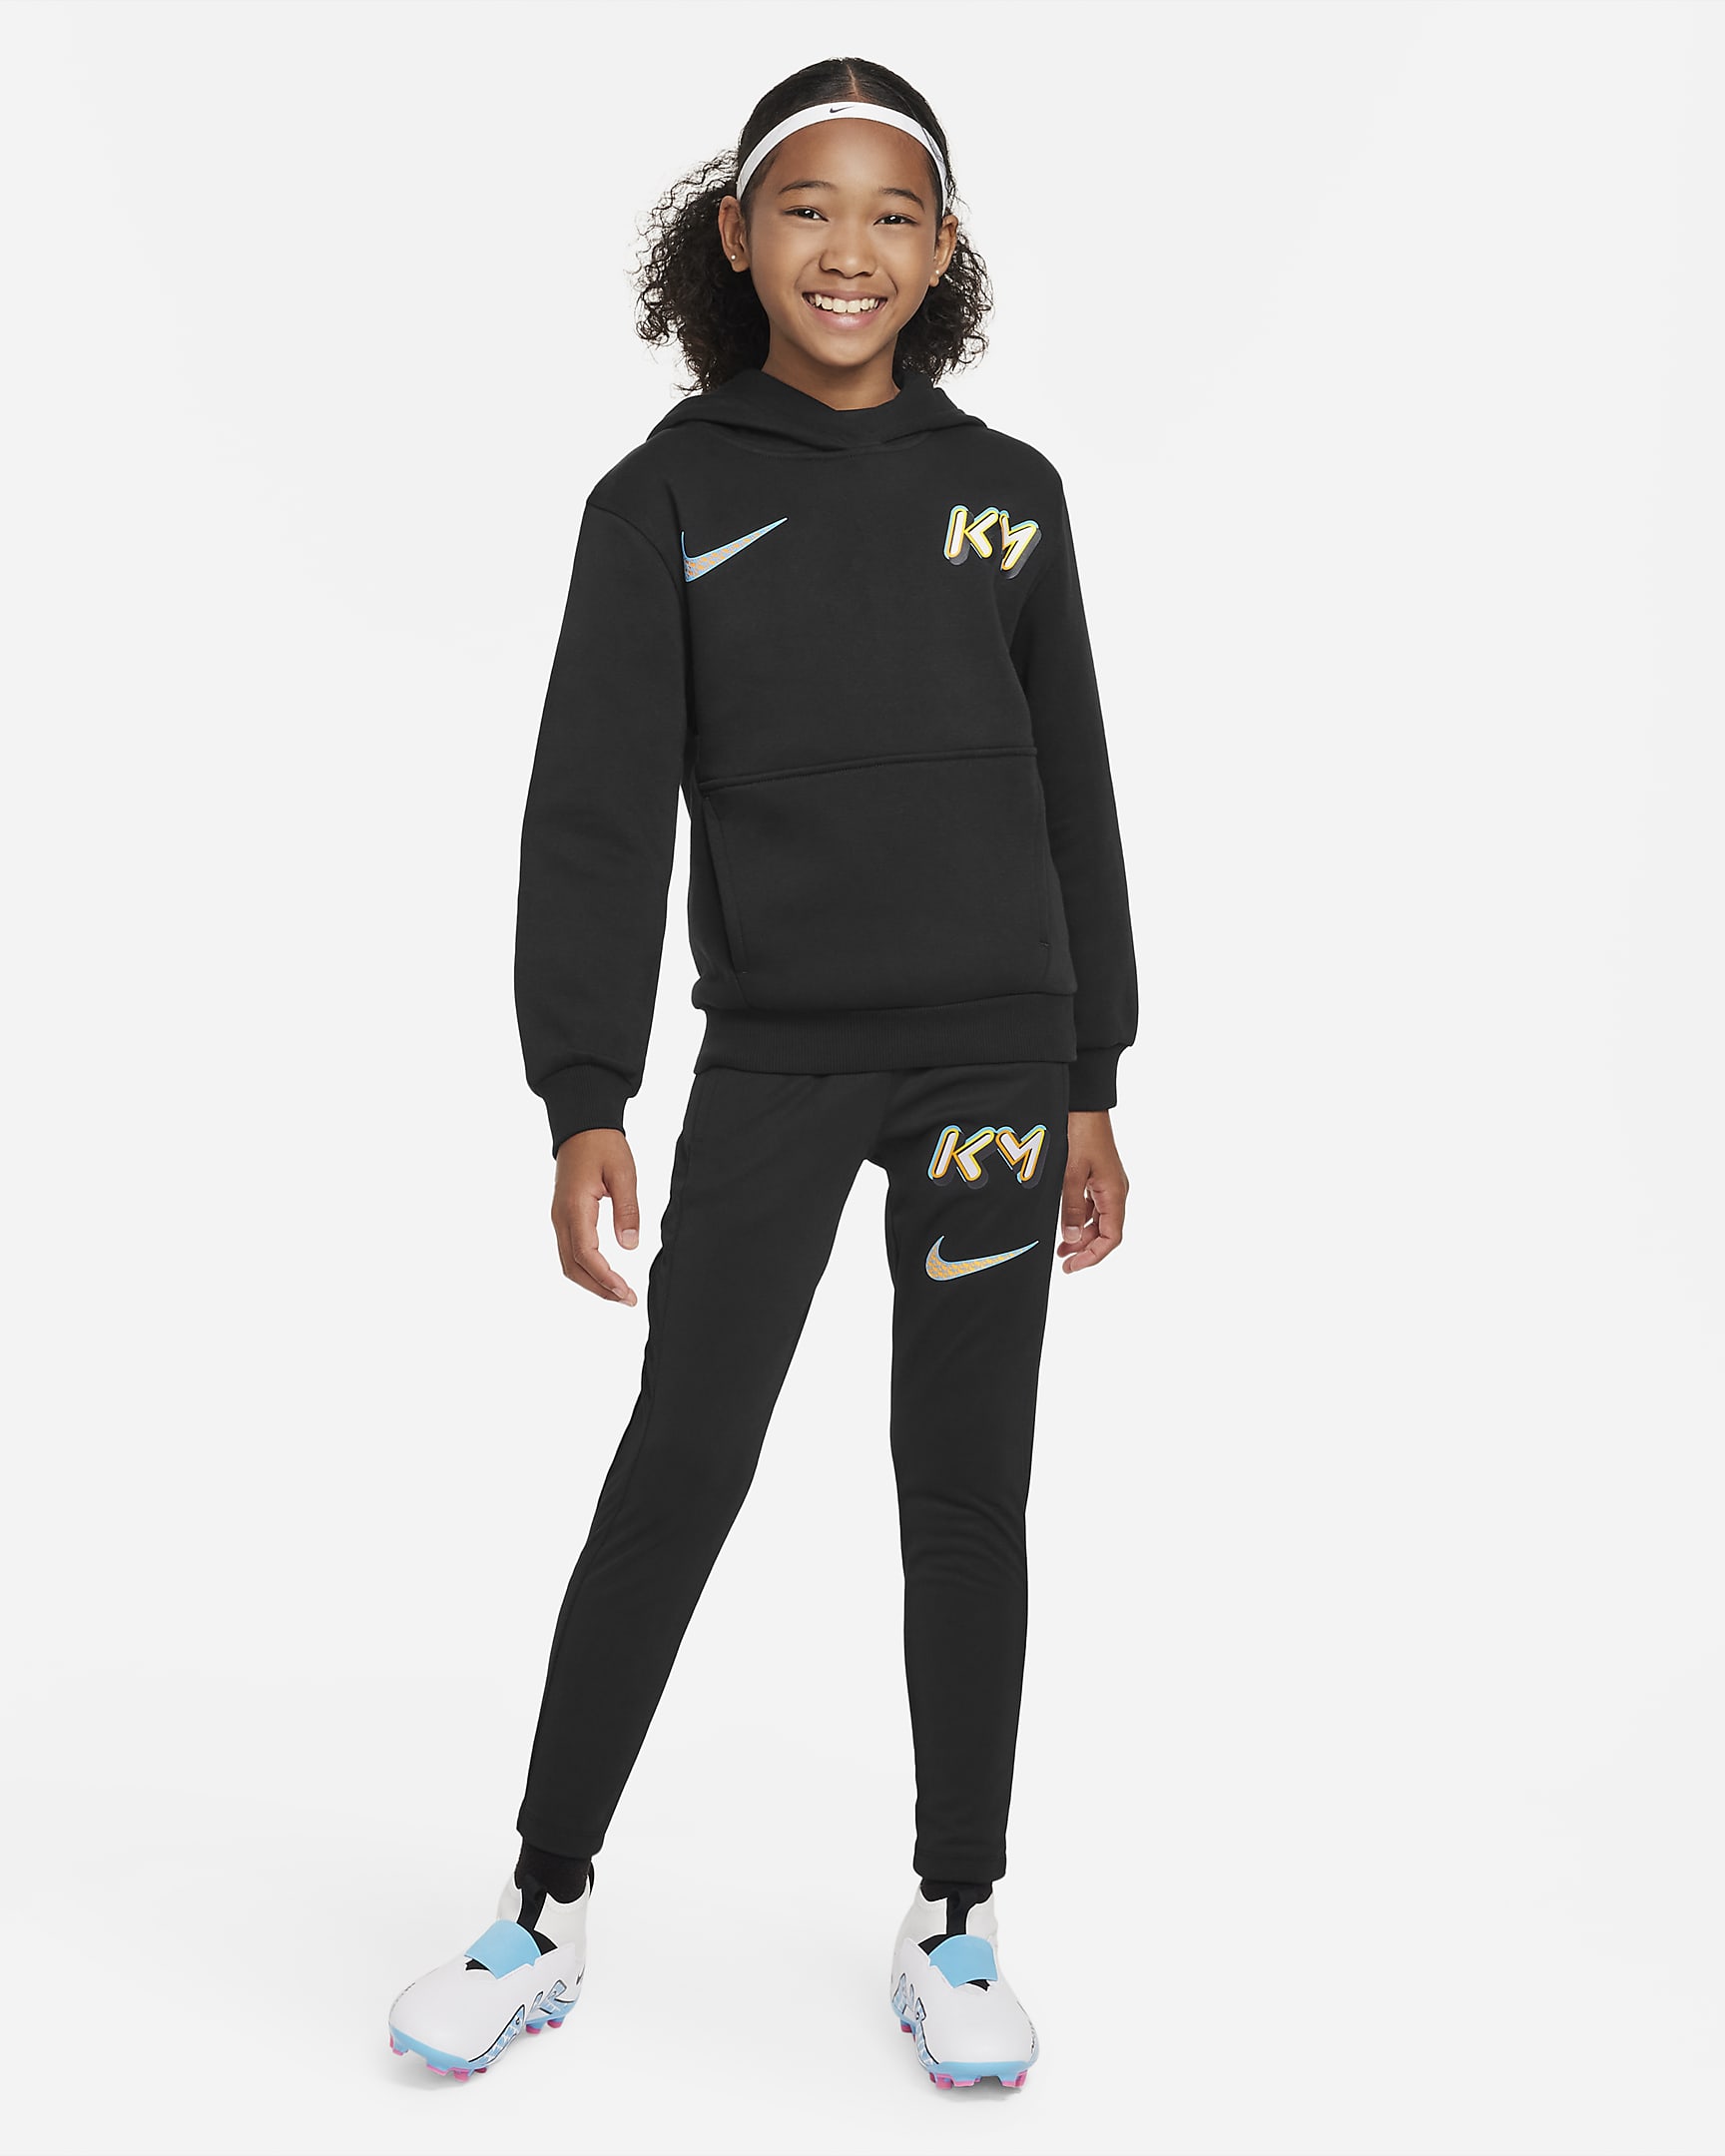 KM Dri-FIT Older Kids' Trousers. Nike ZA